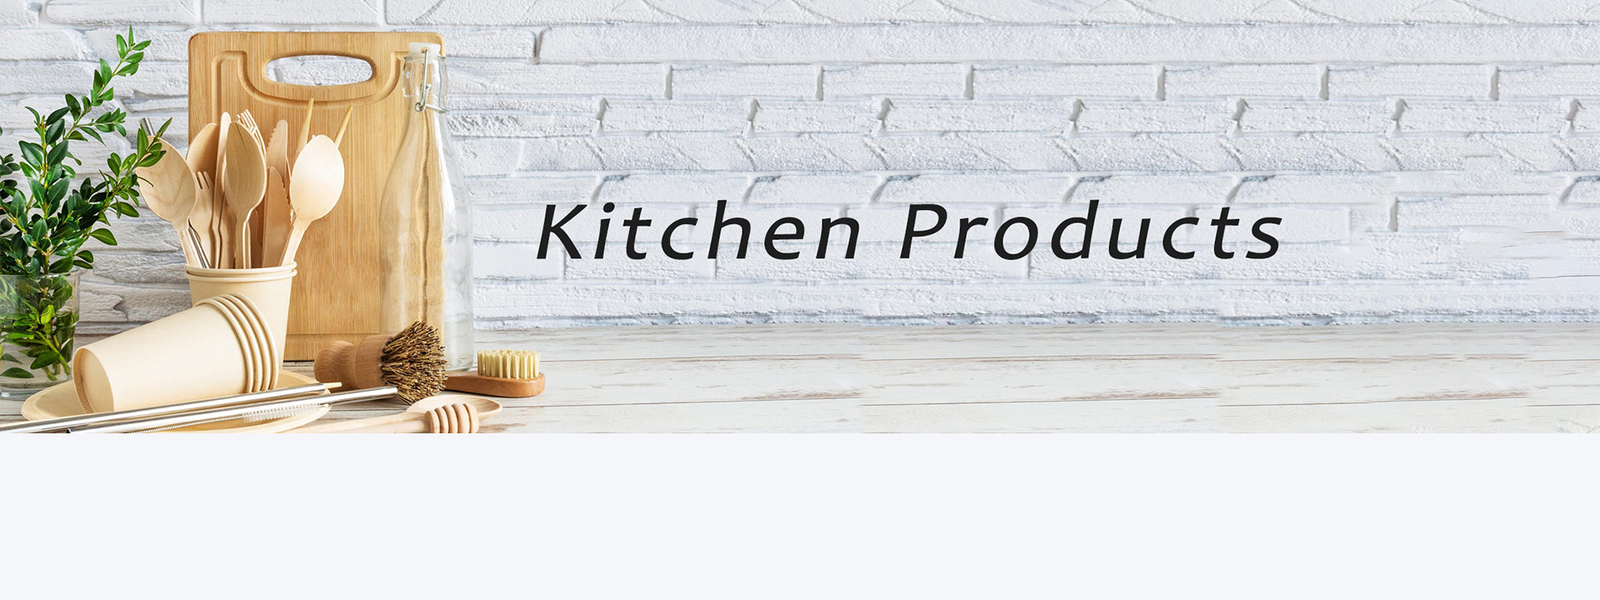 جودة منتجات المطبخ المنزلية مصنع